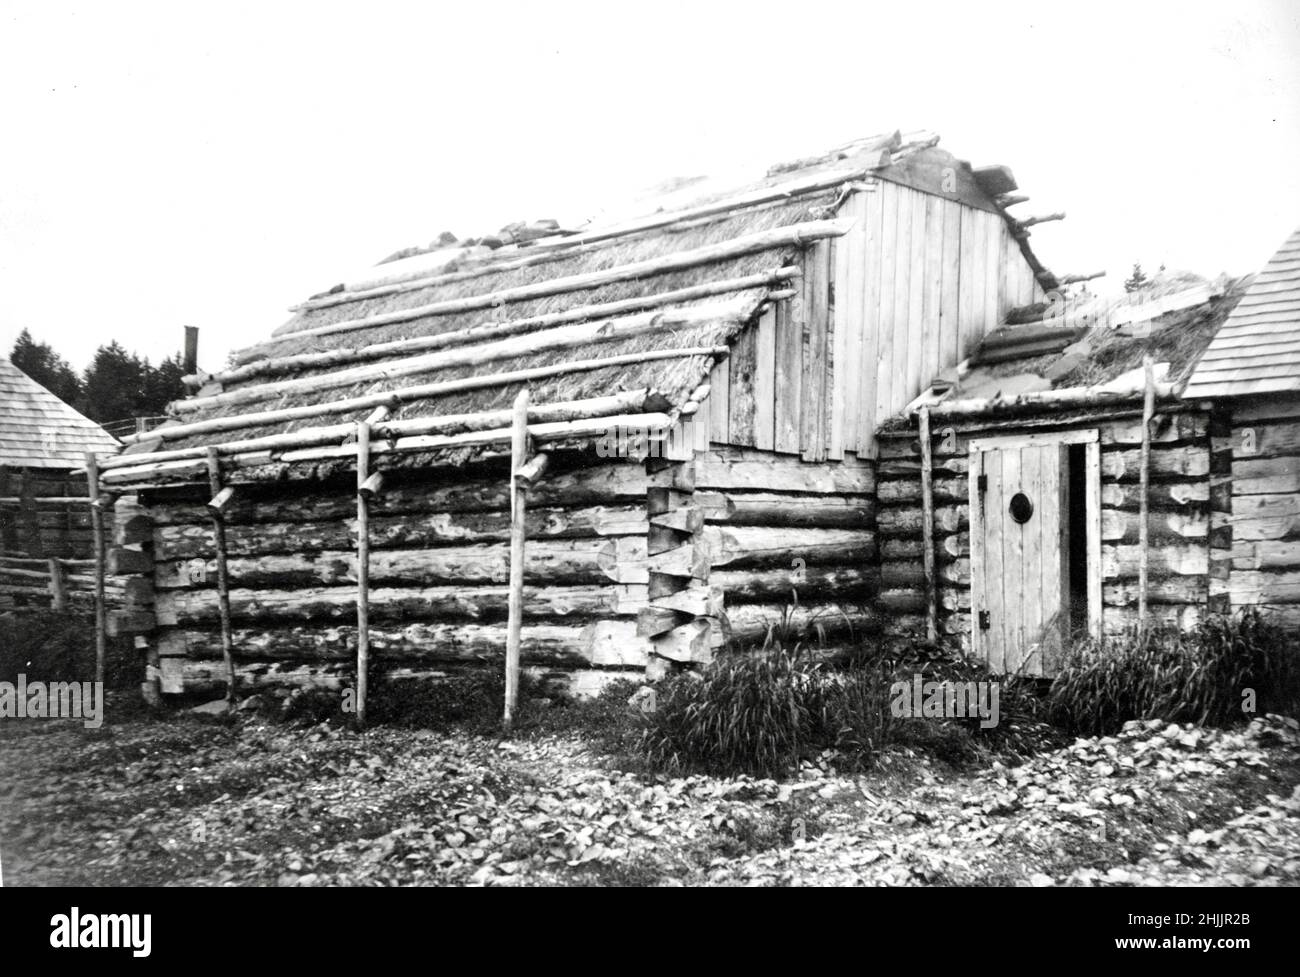 Edward S Curtis photographie d'un barabara Alakan ou d'une cabane en rondins - 1899 Banque D'Images